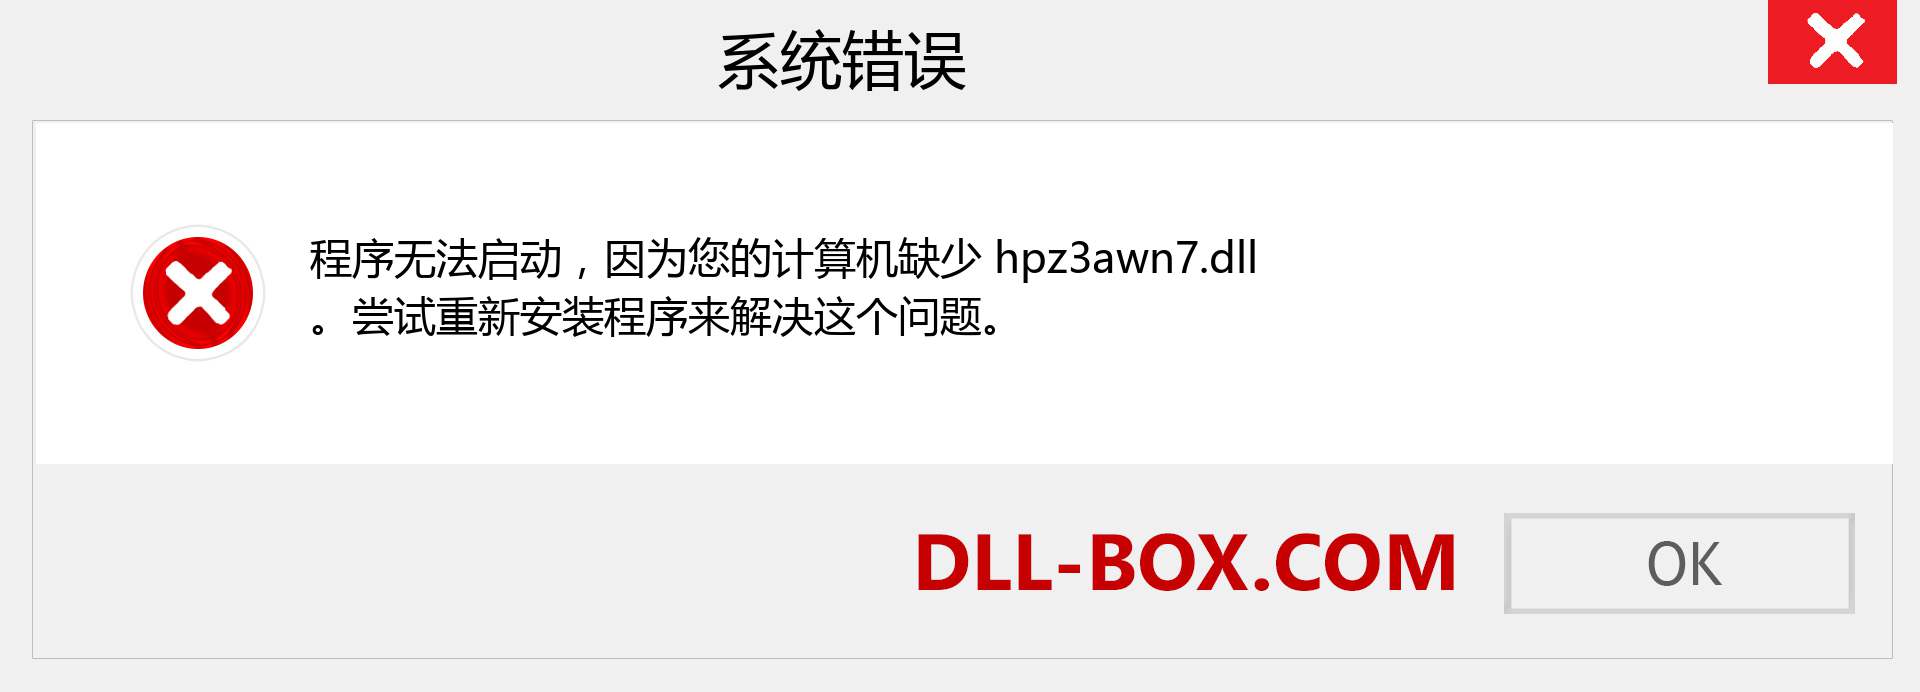 hpz3awn7.dll 文件丢失？。 适用于 Windows 7、8、10 的下载 - 修复 Windows、照片、图像上的 hpz3awn7 dll 丢失错误